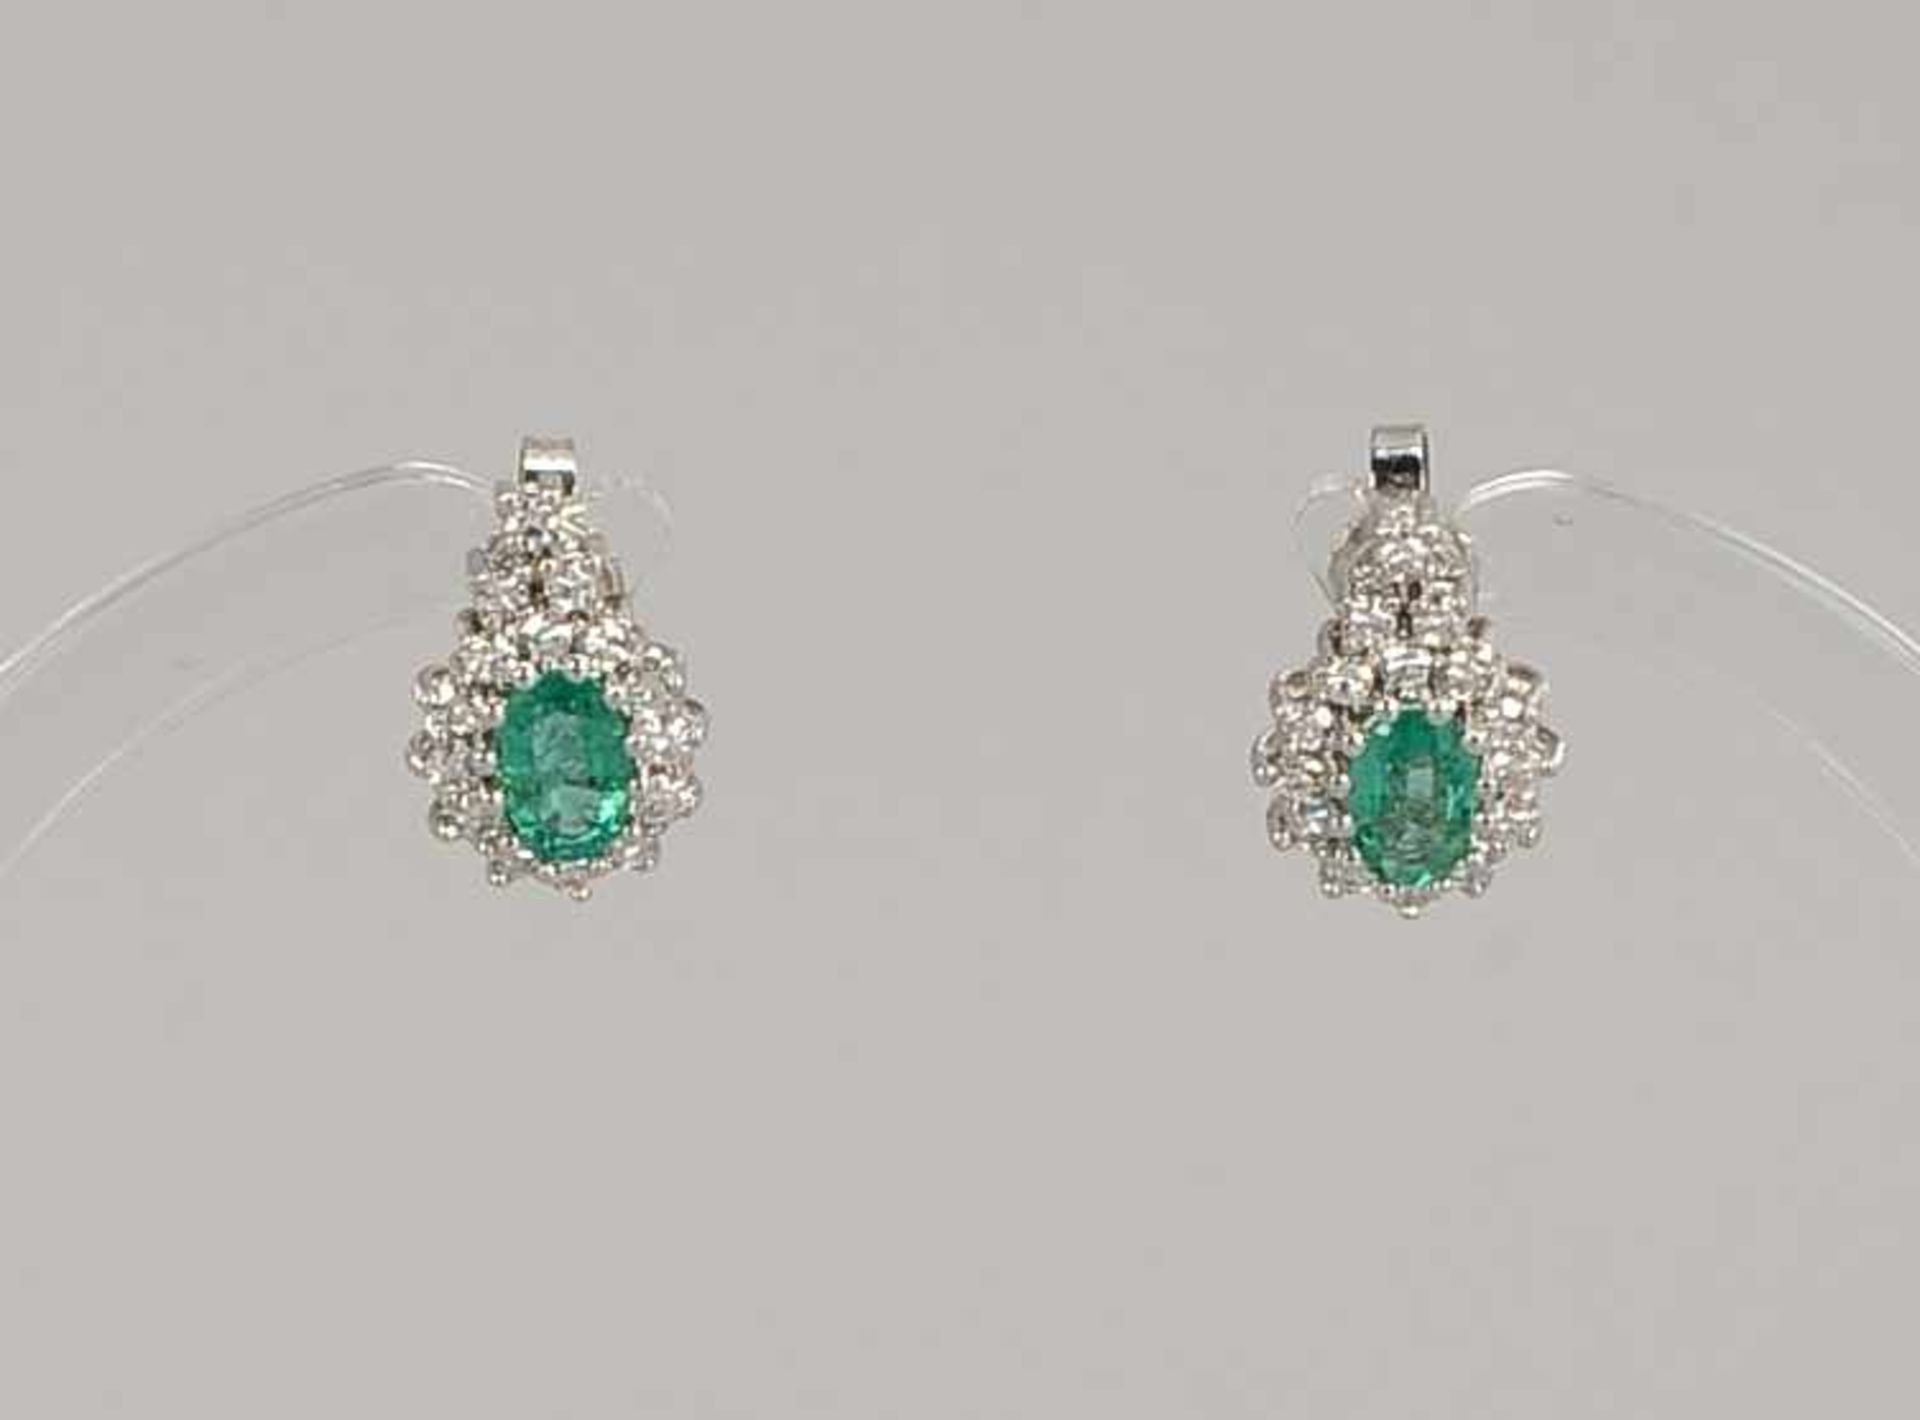 Schmuckset, 585 WG, mit Smaragden/jeweils mit Entourage aus Diamanten: Paar Ohrstecker, Smaragde von - Bild 2 aus 2